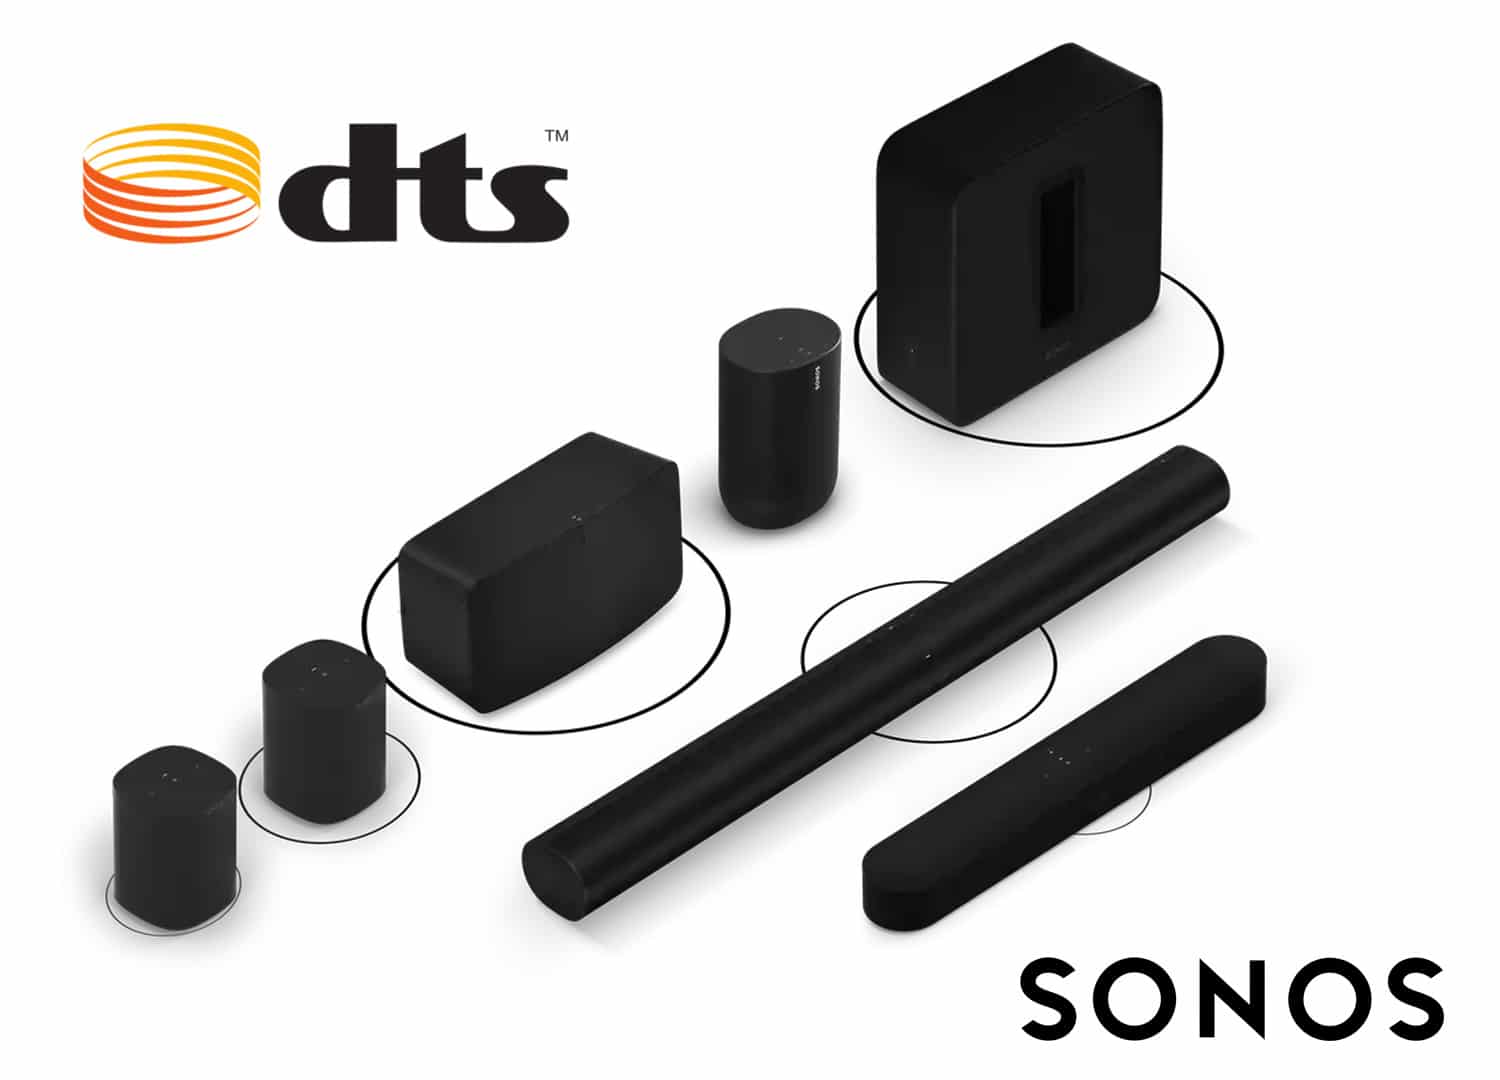 Sonos DTS